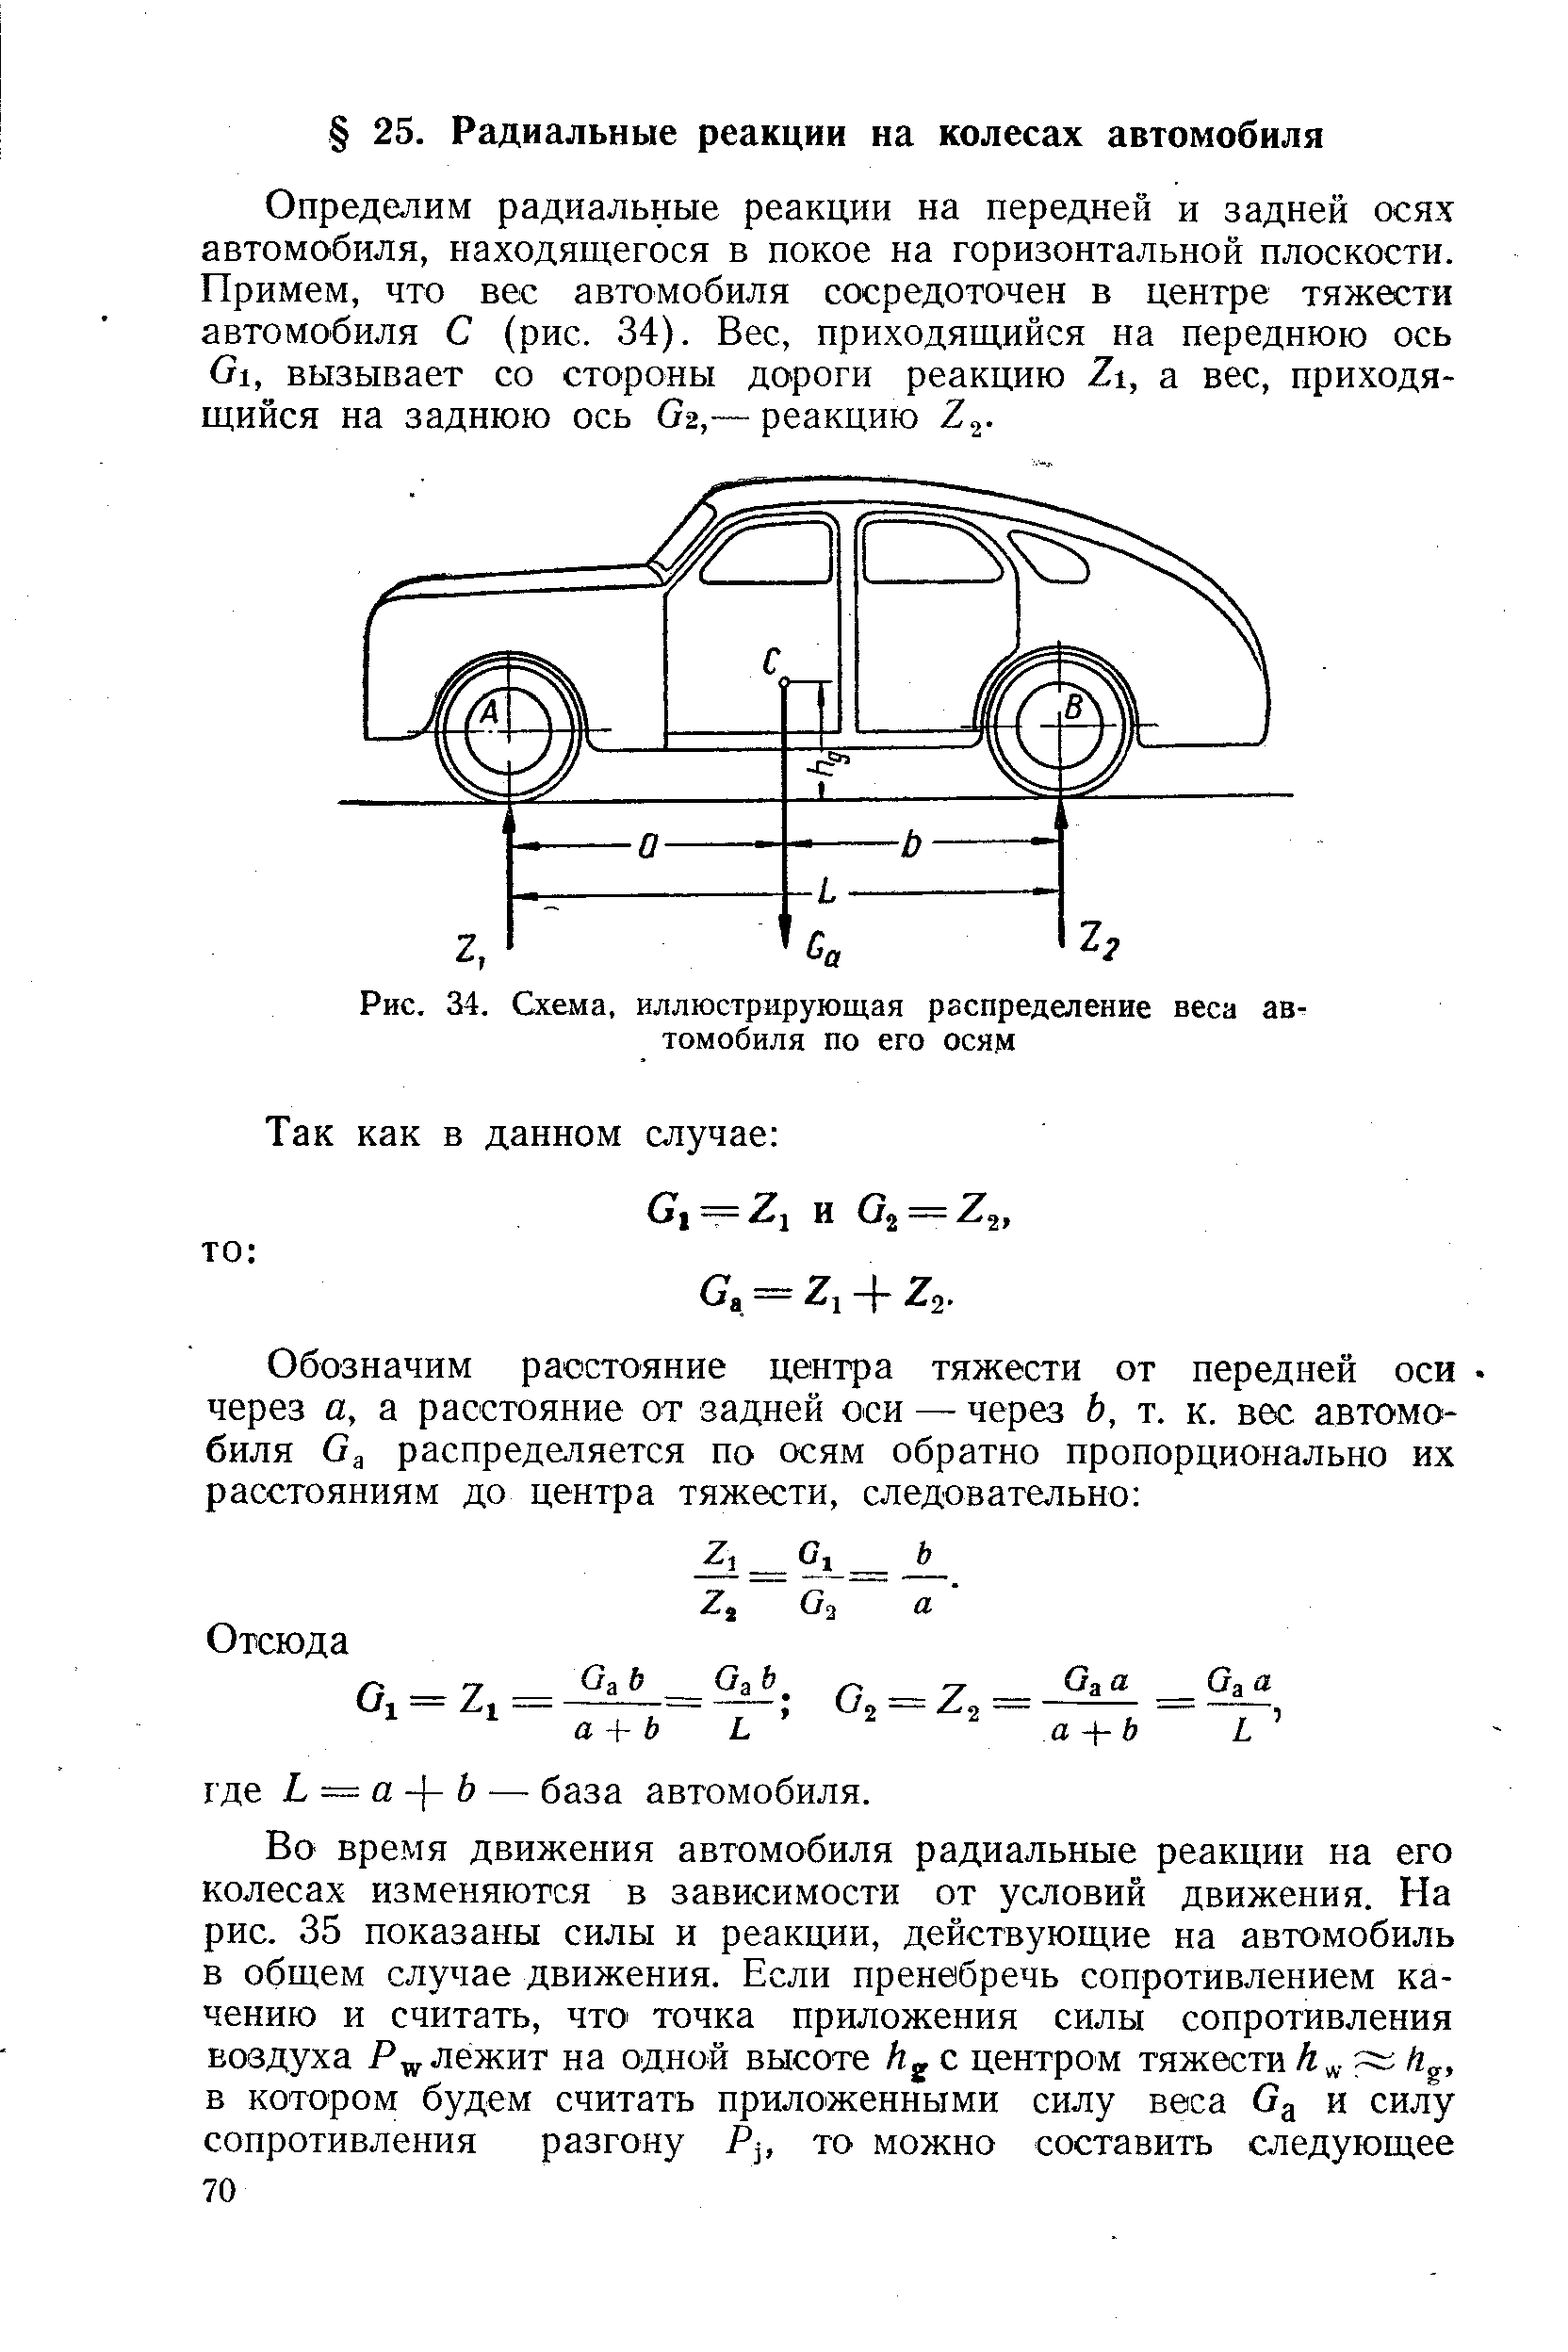 Центр тяжести автомобиля формула